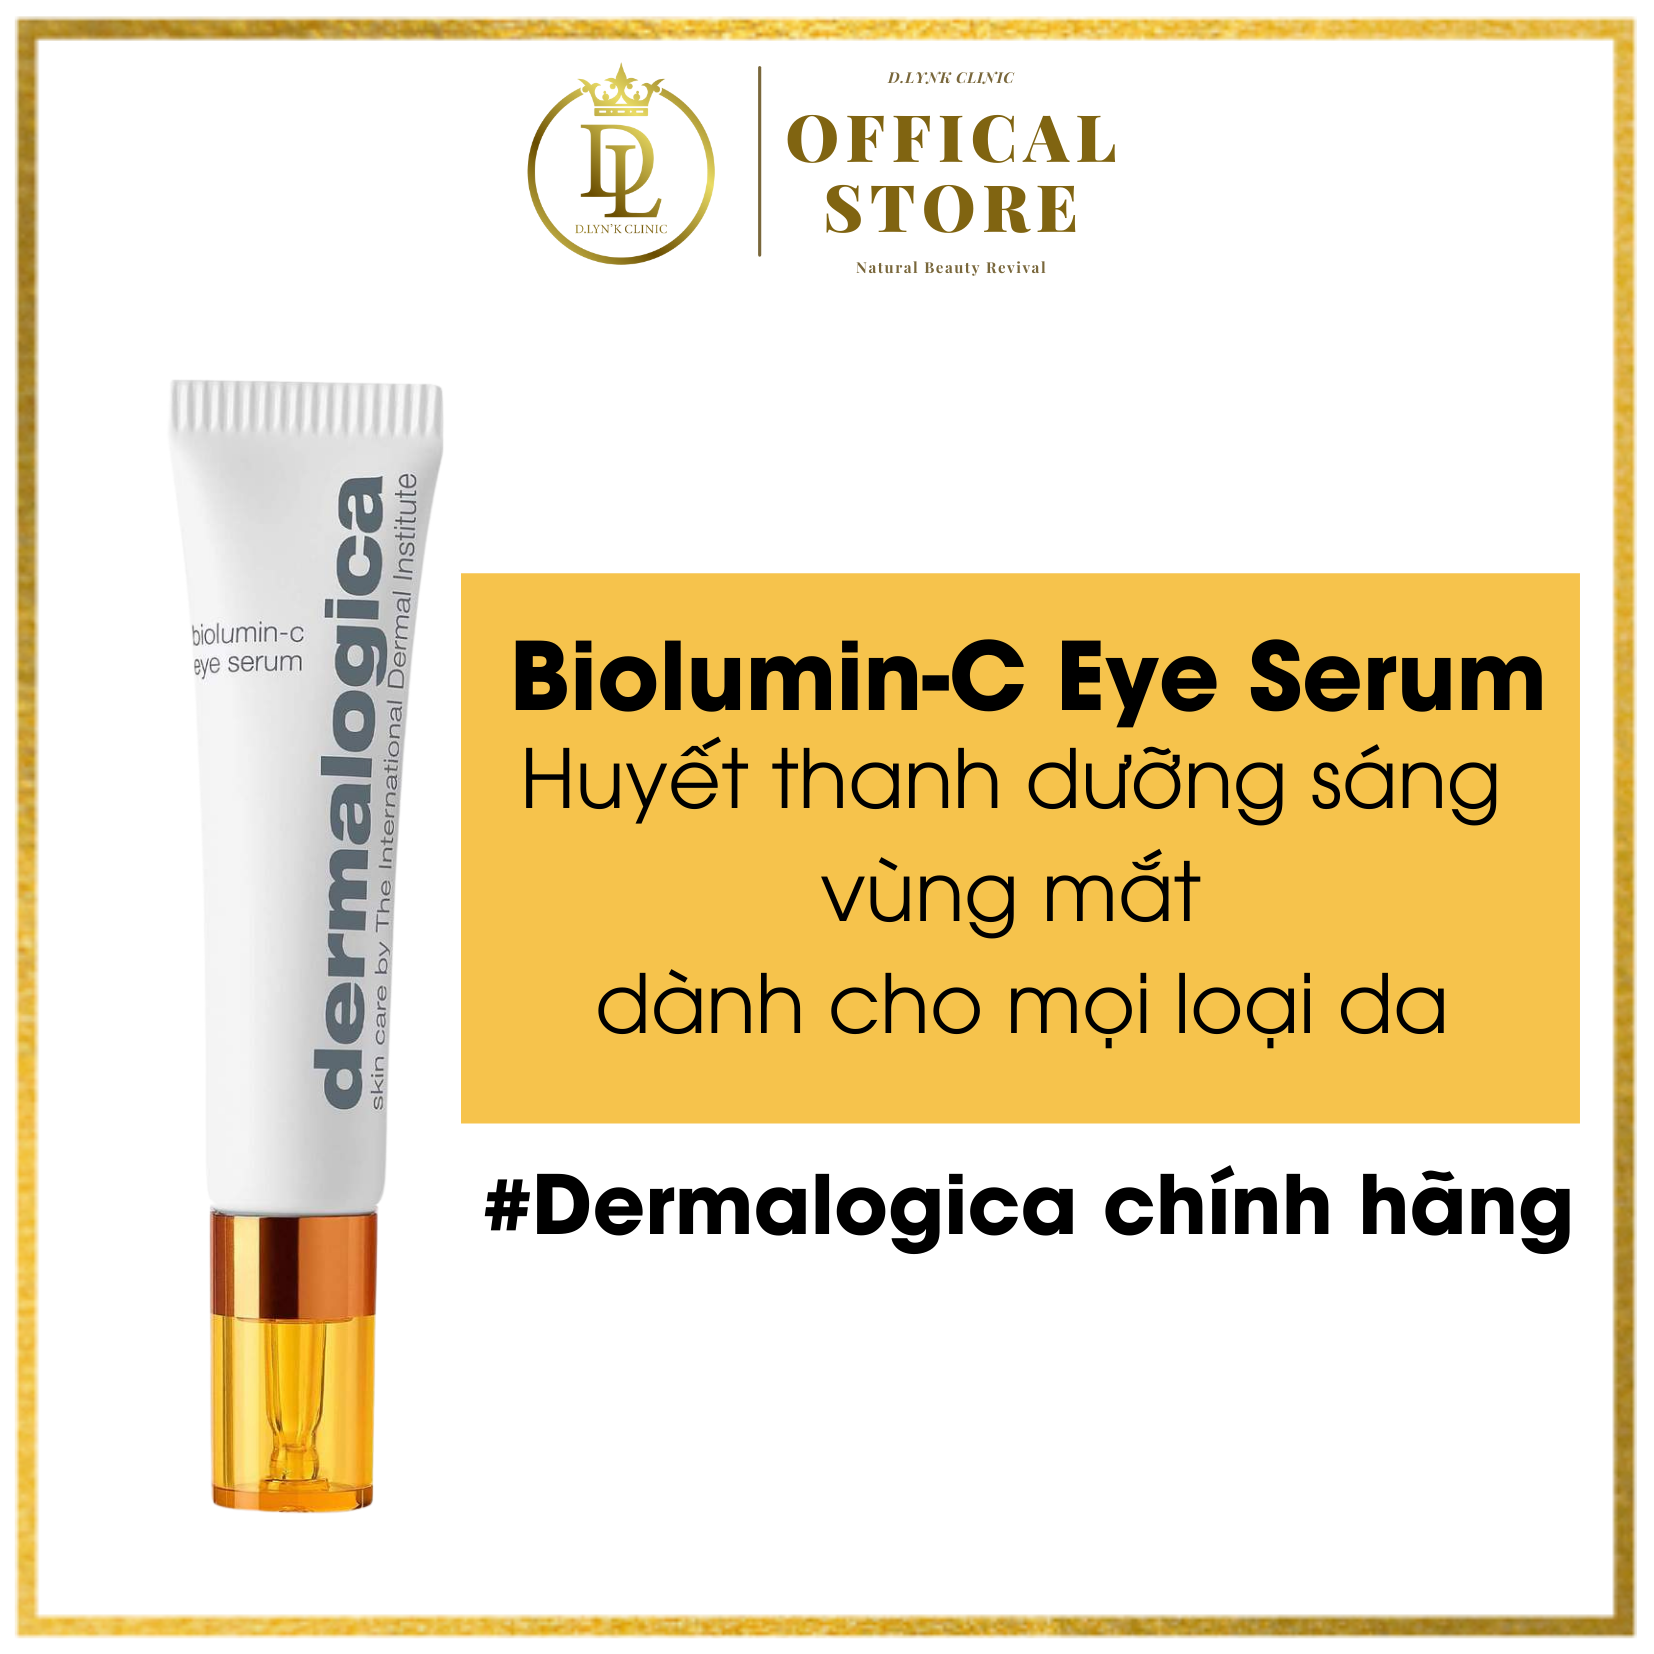 [HCM] Tinh chất dưỡng sáng vùng mắt Dermalogica Biolumin C Eye Serum 15ml dành cho mọi loại da